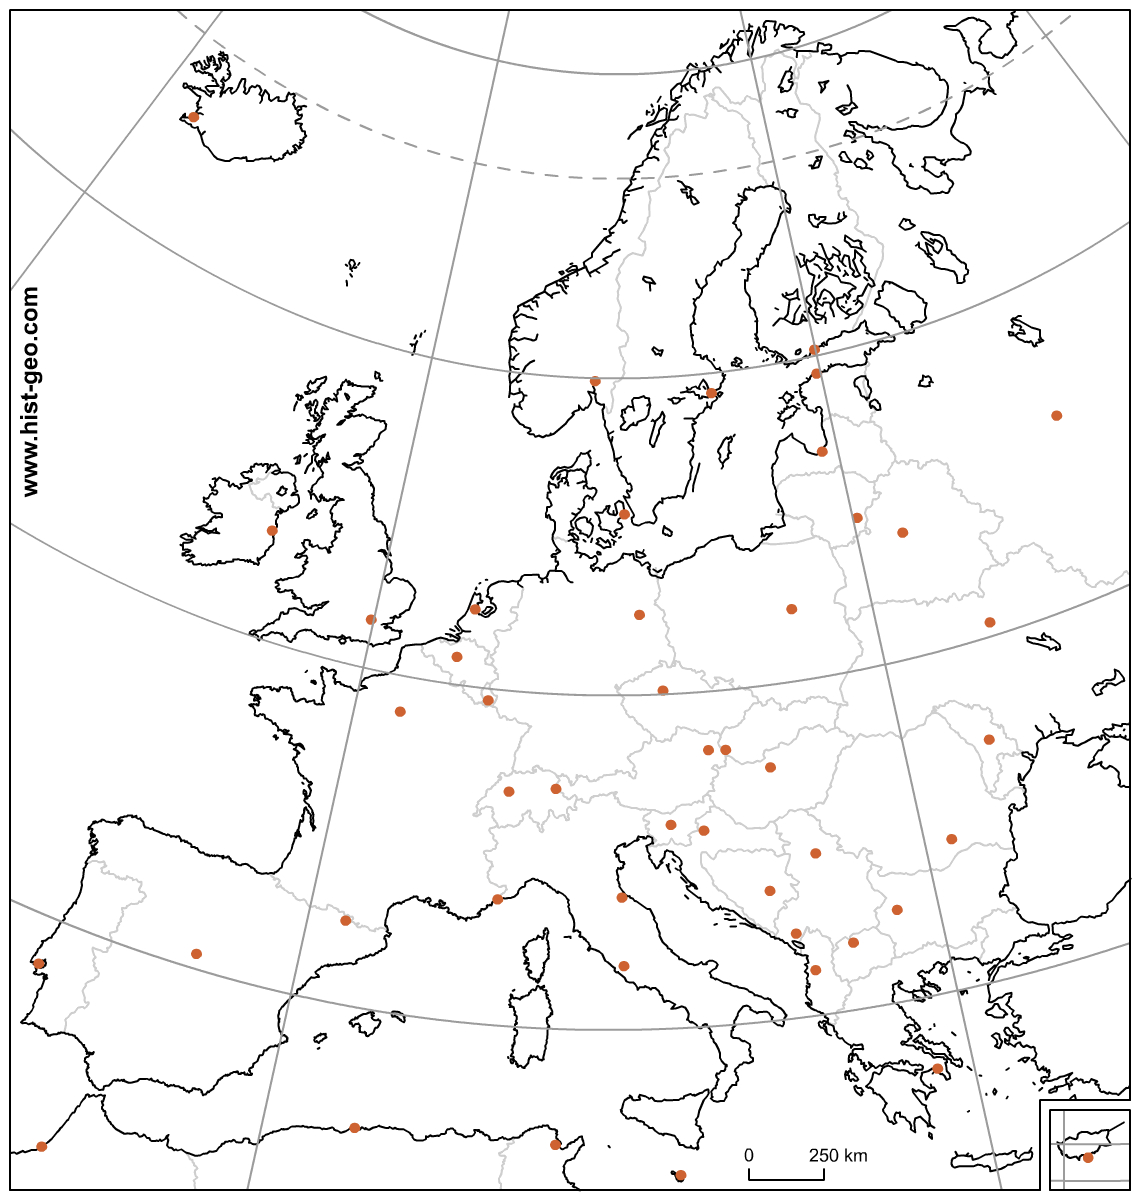 Carte Muette Des Pays Et Capitales D'europe (Ue) Avec concernant Carte Europe Pays Et Capitale